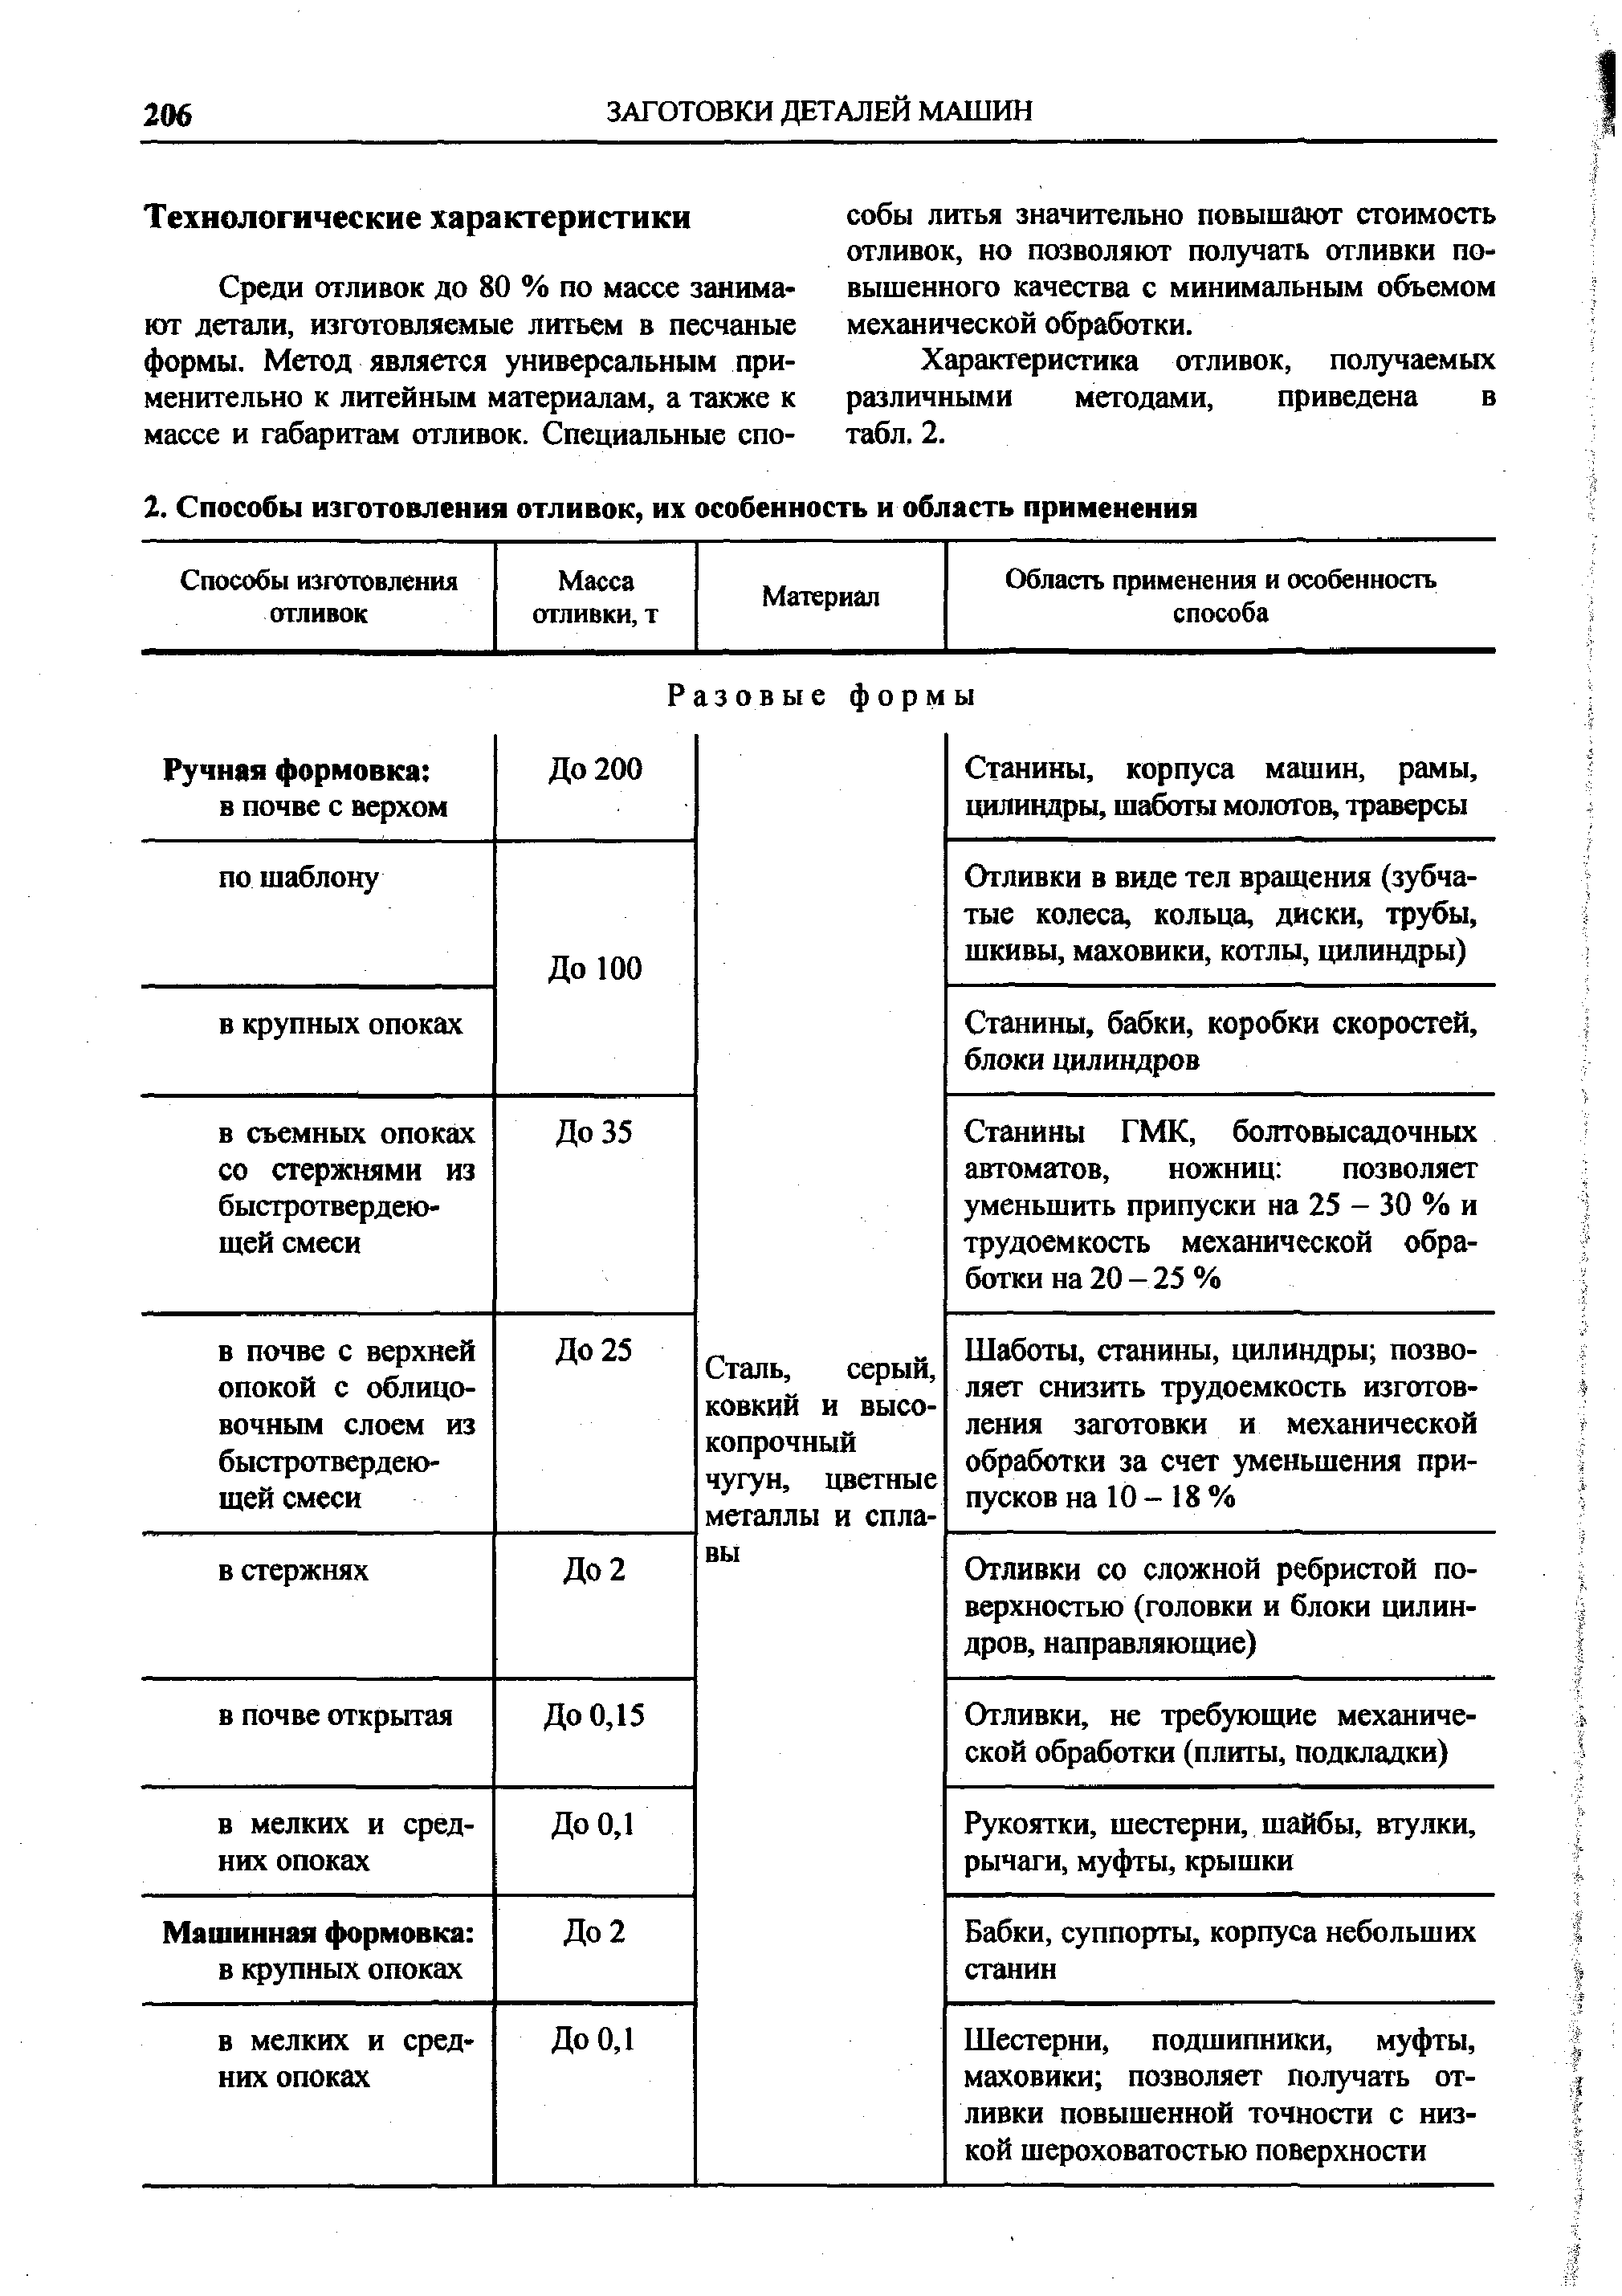 Характеристика отливок, получаемых различными методами, приведена в табл. 2.
